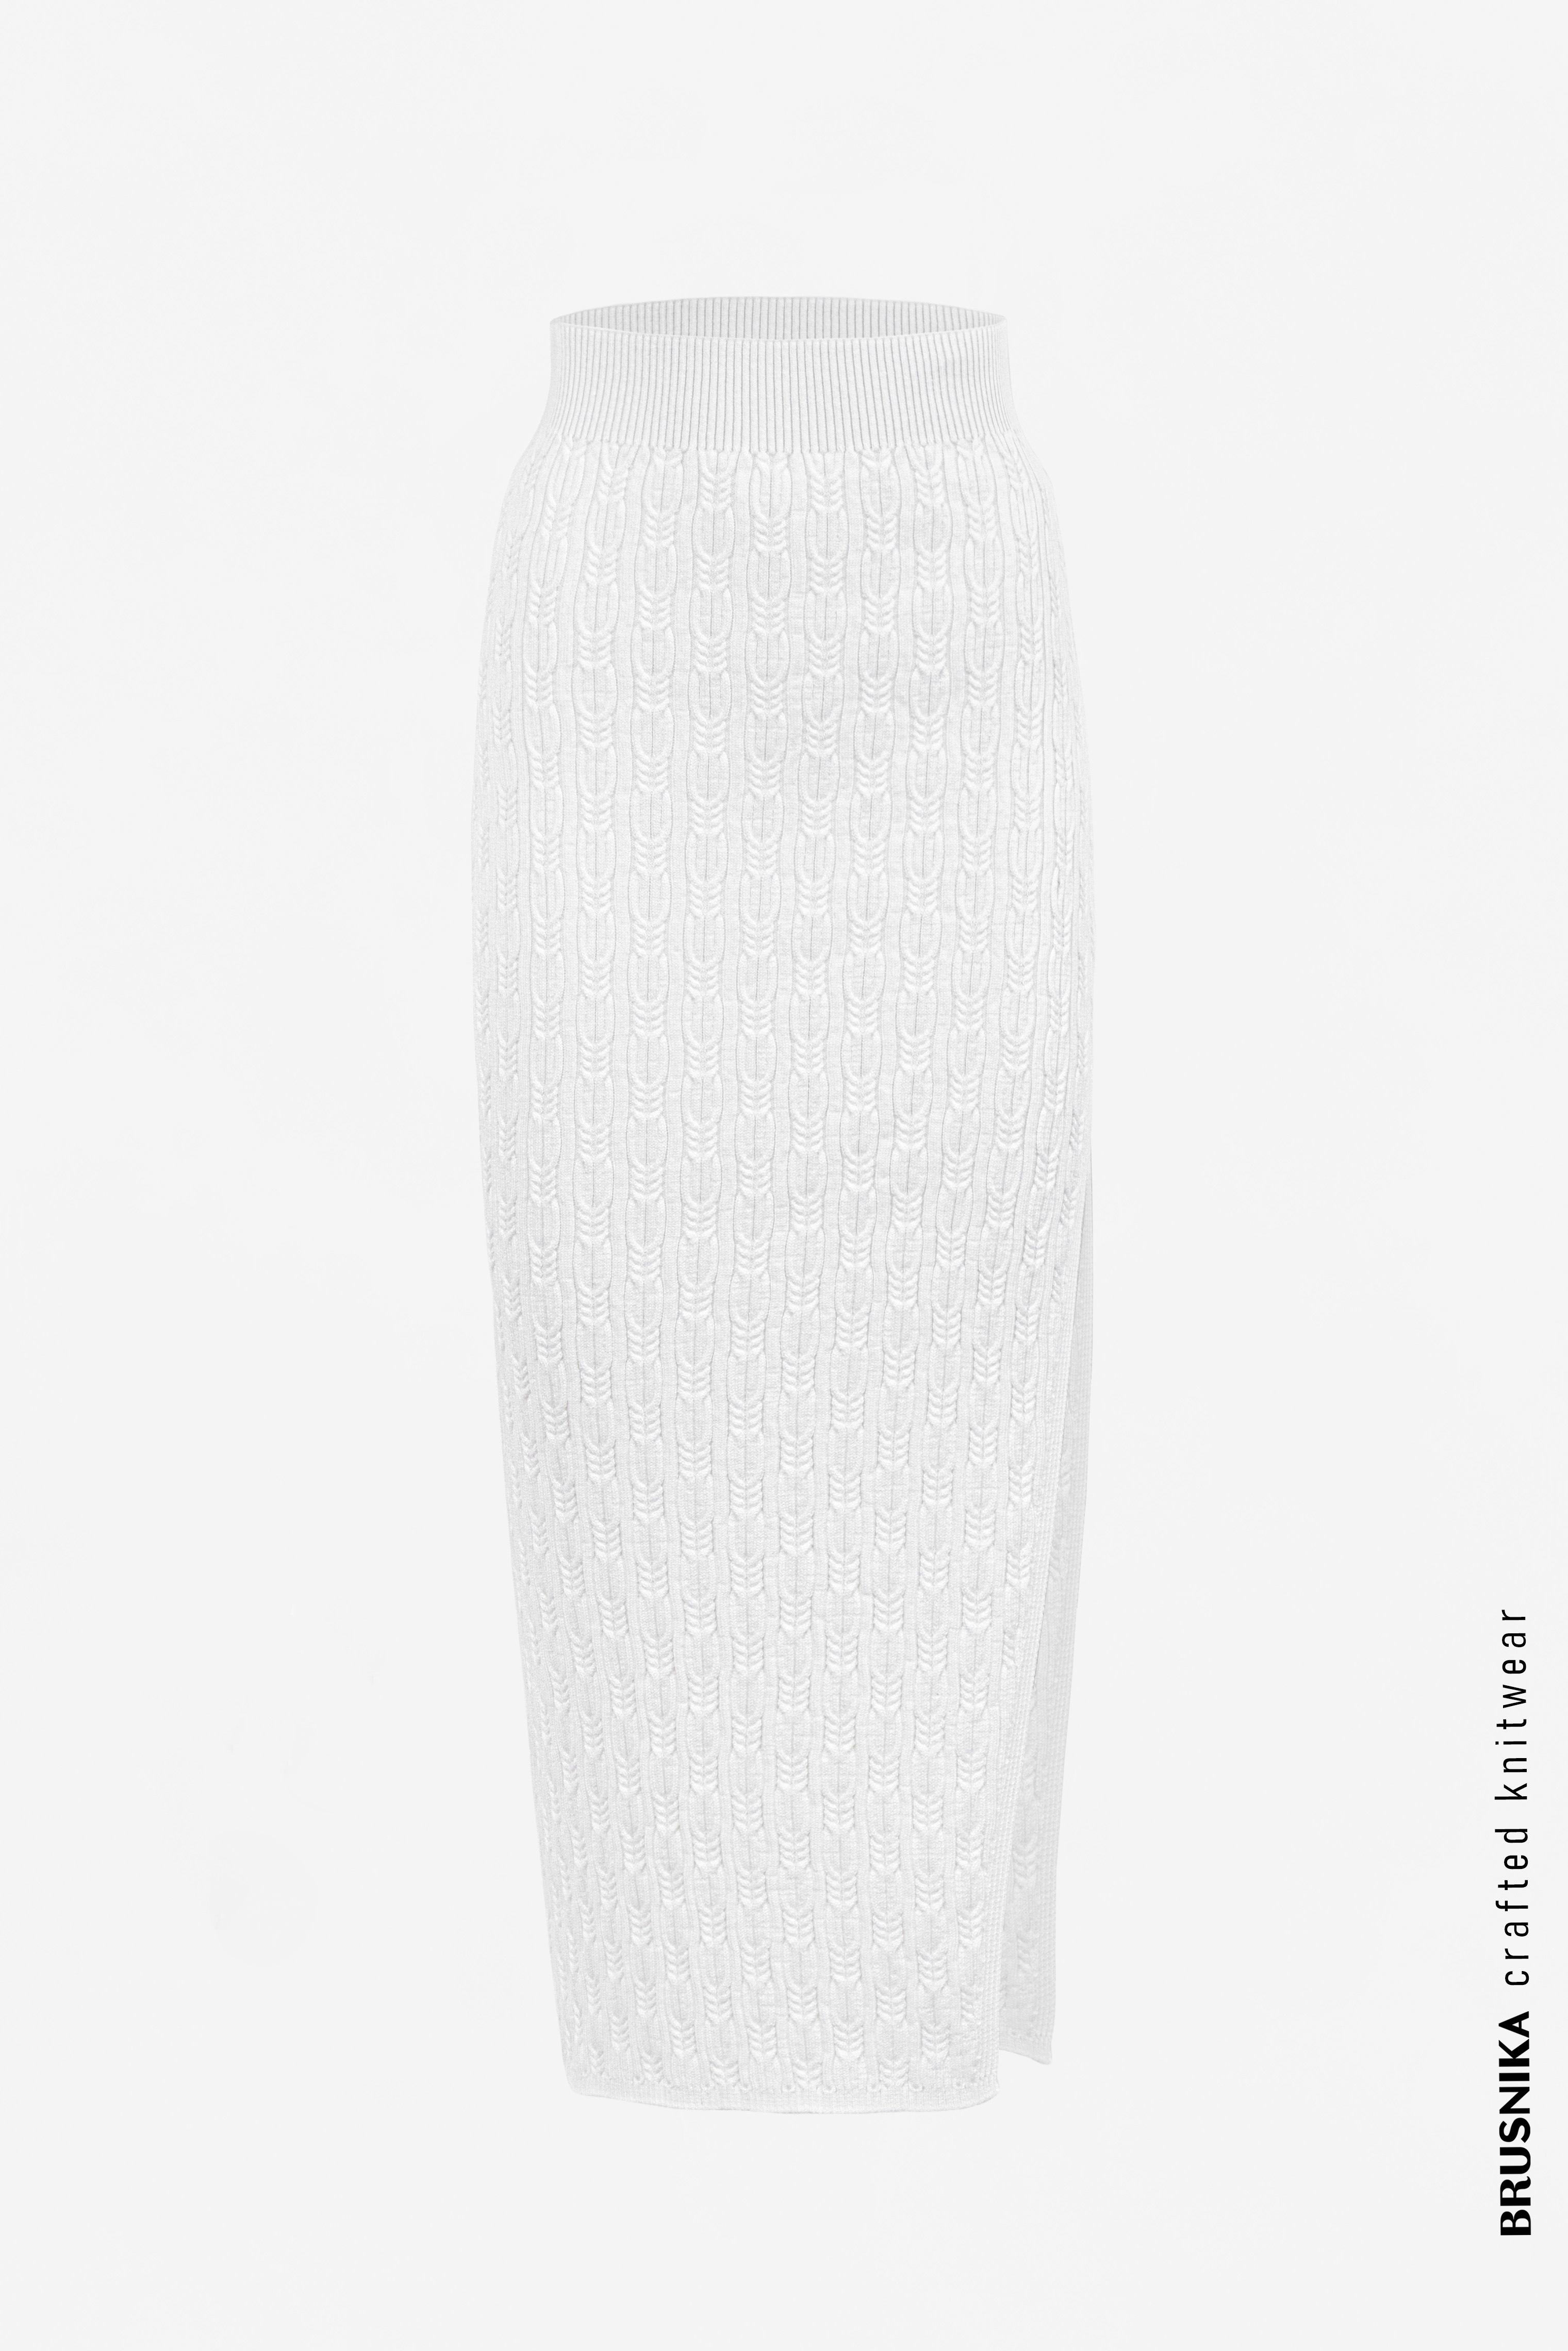 Skirt 3943-02 White from BRUSNiKA